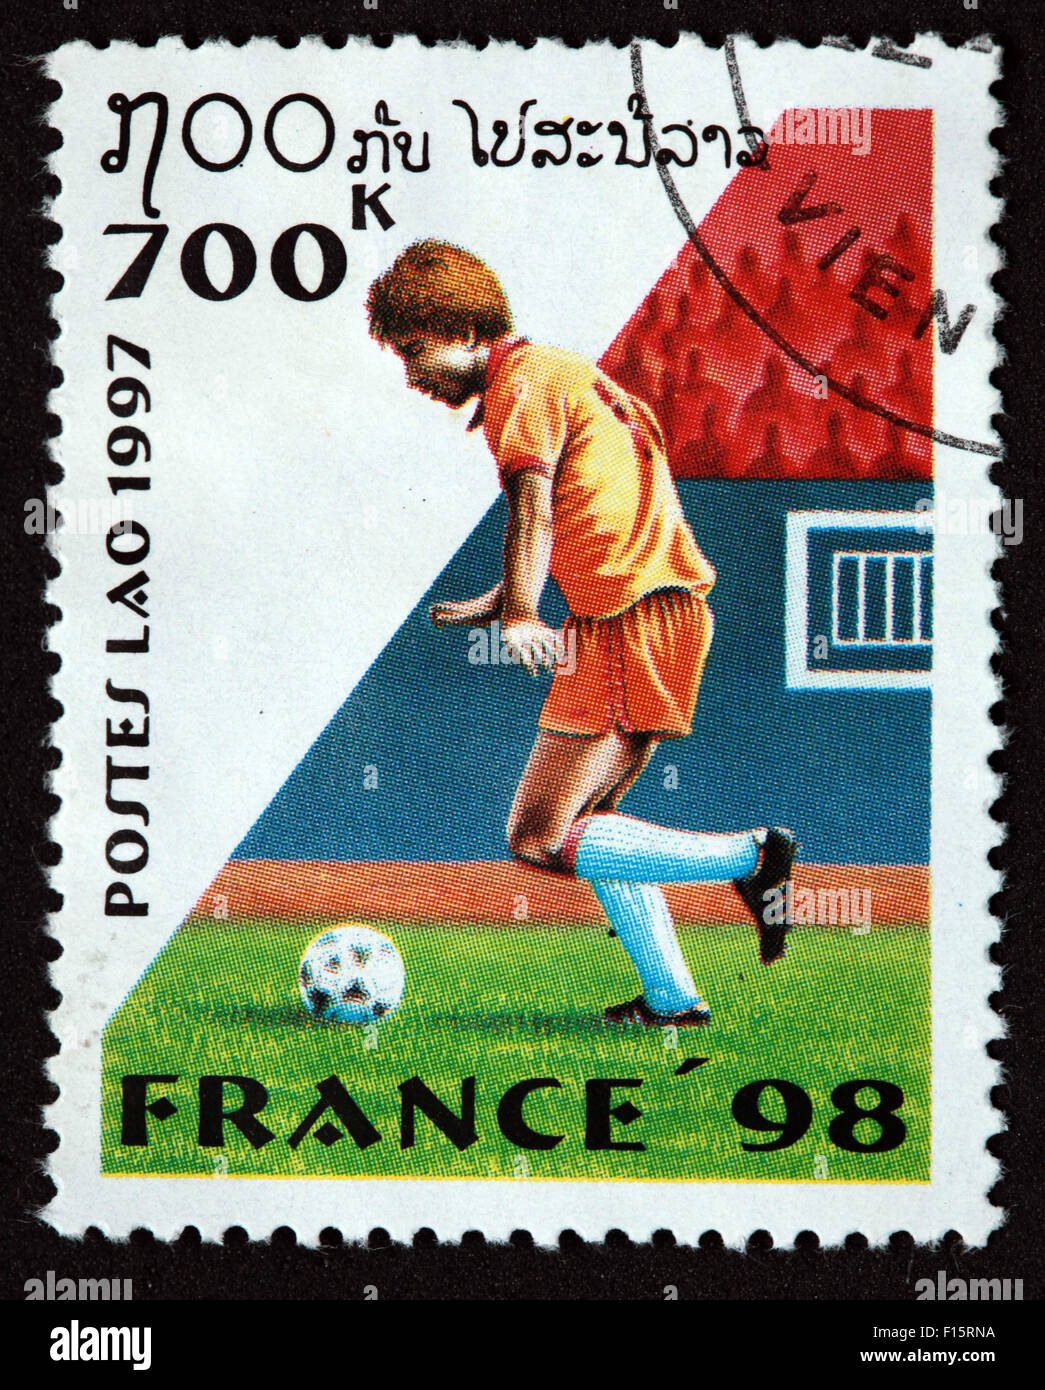 Laos Lao Postes 700K France 1998 98 Coupe du monde de football sports sport worldcup stamp Banque D'Images